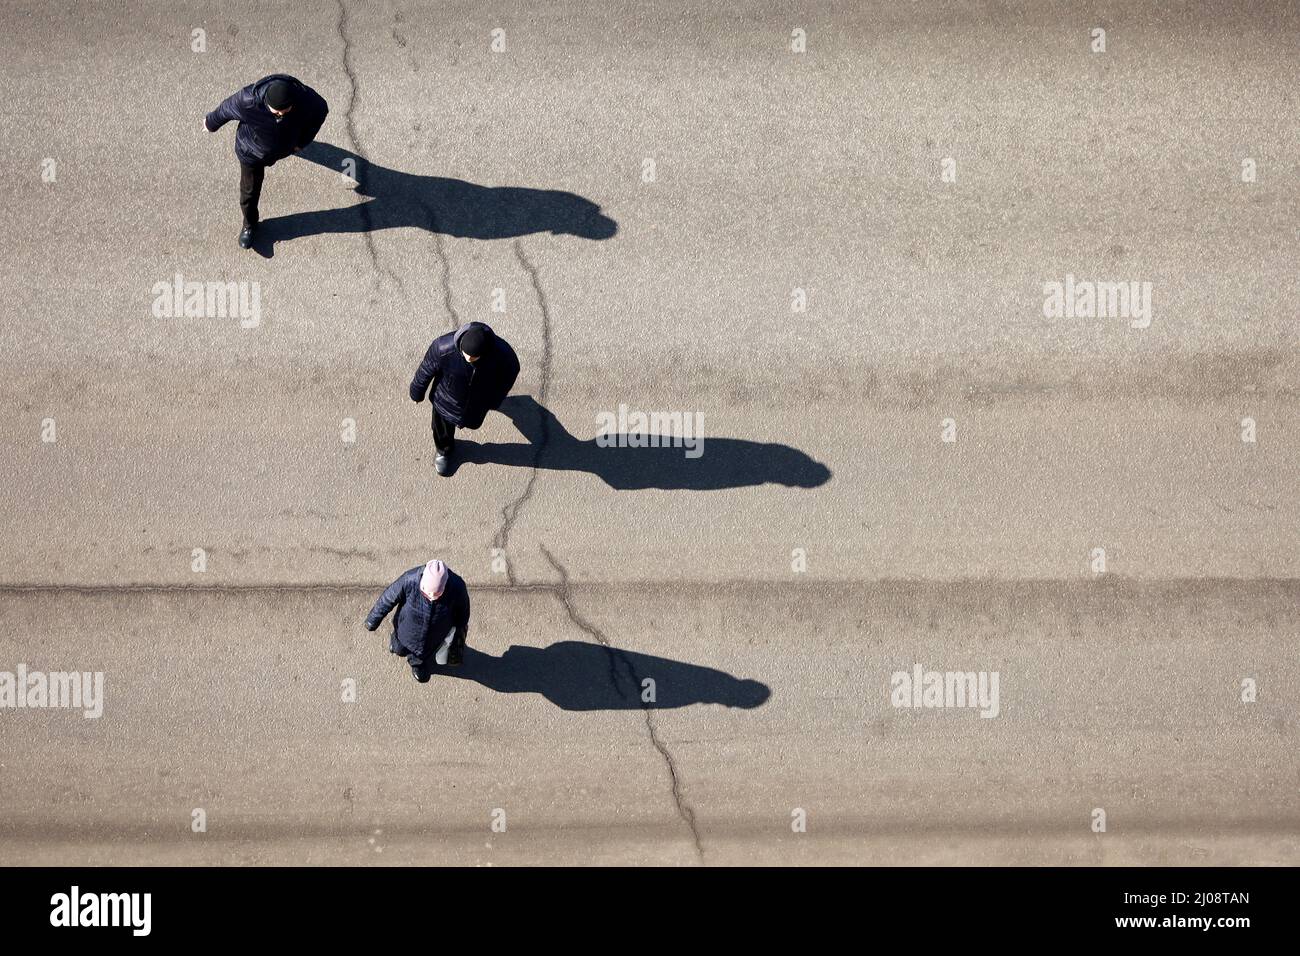 Menschen, die die Straße überqueren, Draufsicht. Lange Schatten auf Asphalt, Konzept der Verkehrssicherheit, Stadtleben Stockfoto